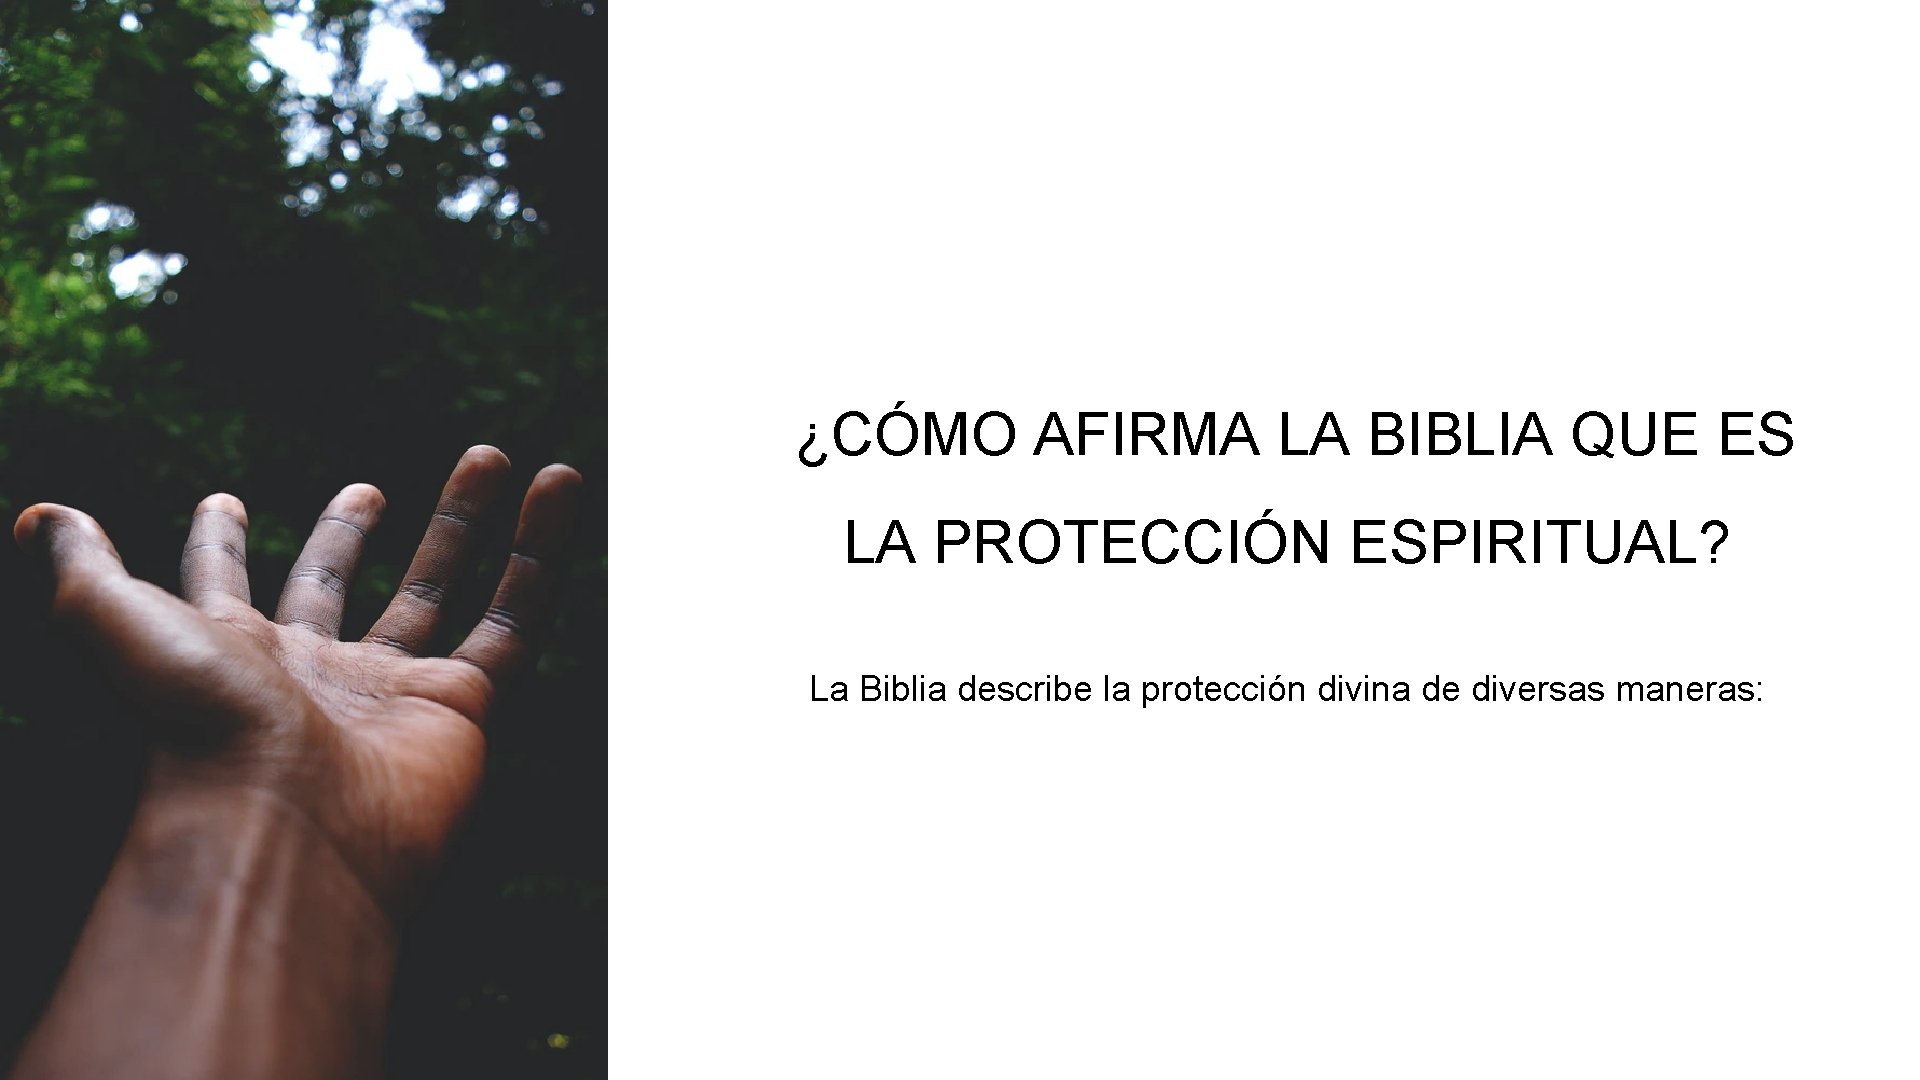 ¿CÓMO AFIRMA LA BIBLIA QUE ES LA PROTECCIÓN ESPIRITUAL? La Biblia describe la protección